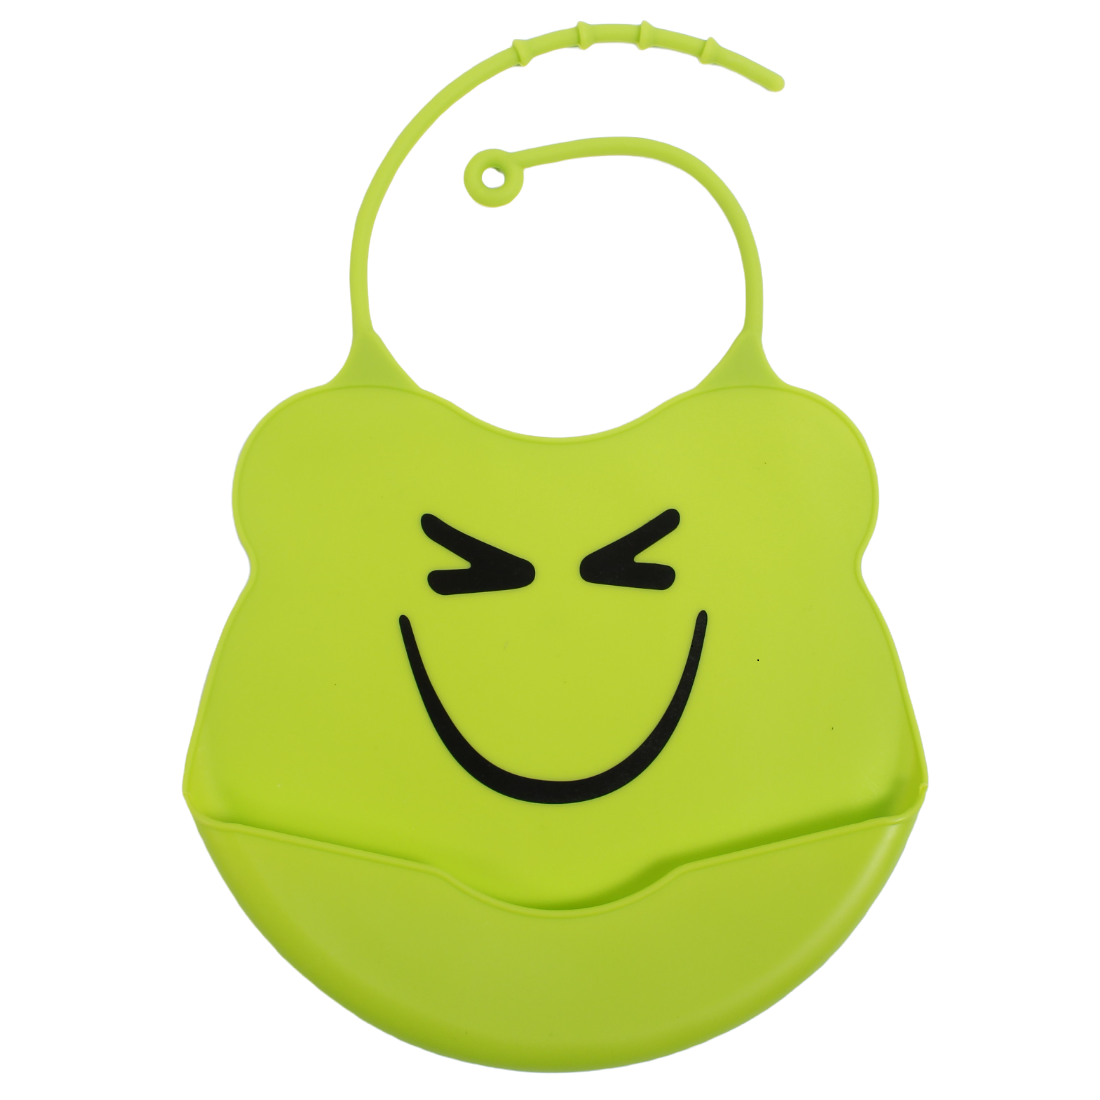 Слюнявчик-нагрудник Lindo, силиконовый, на застежке, зеленый (Ф 933) - фото 1